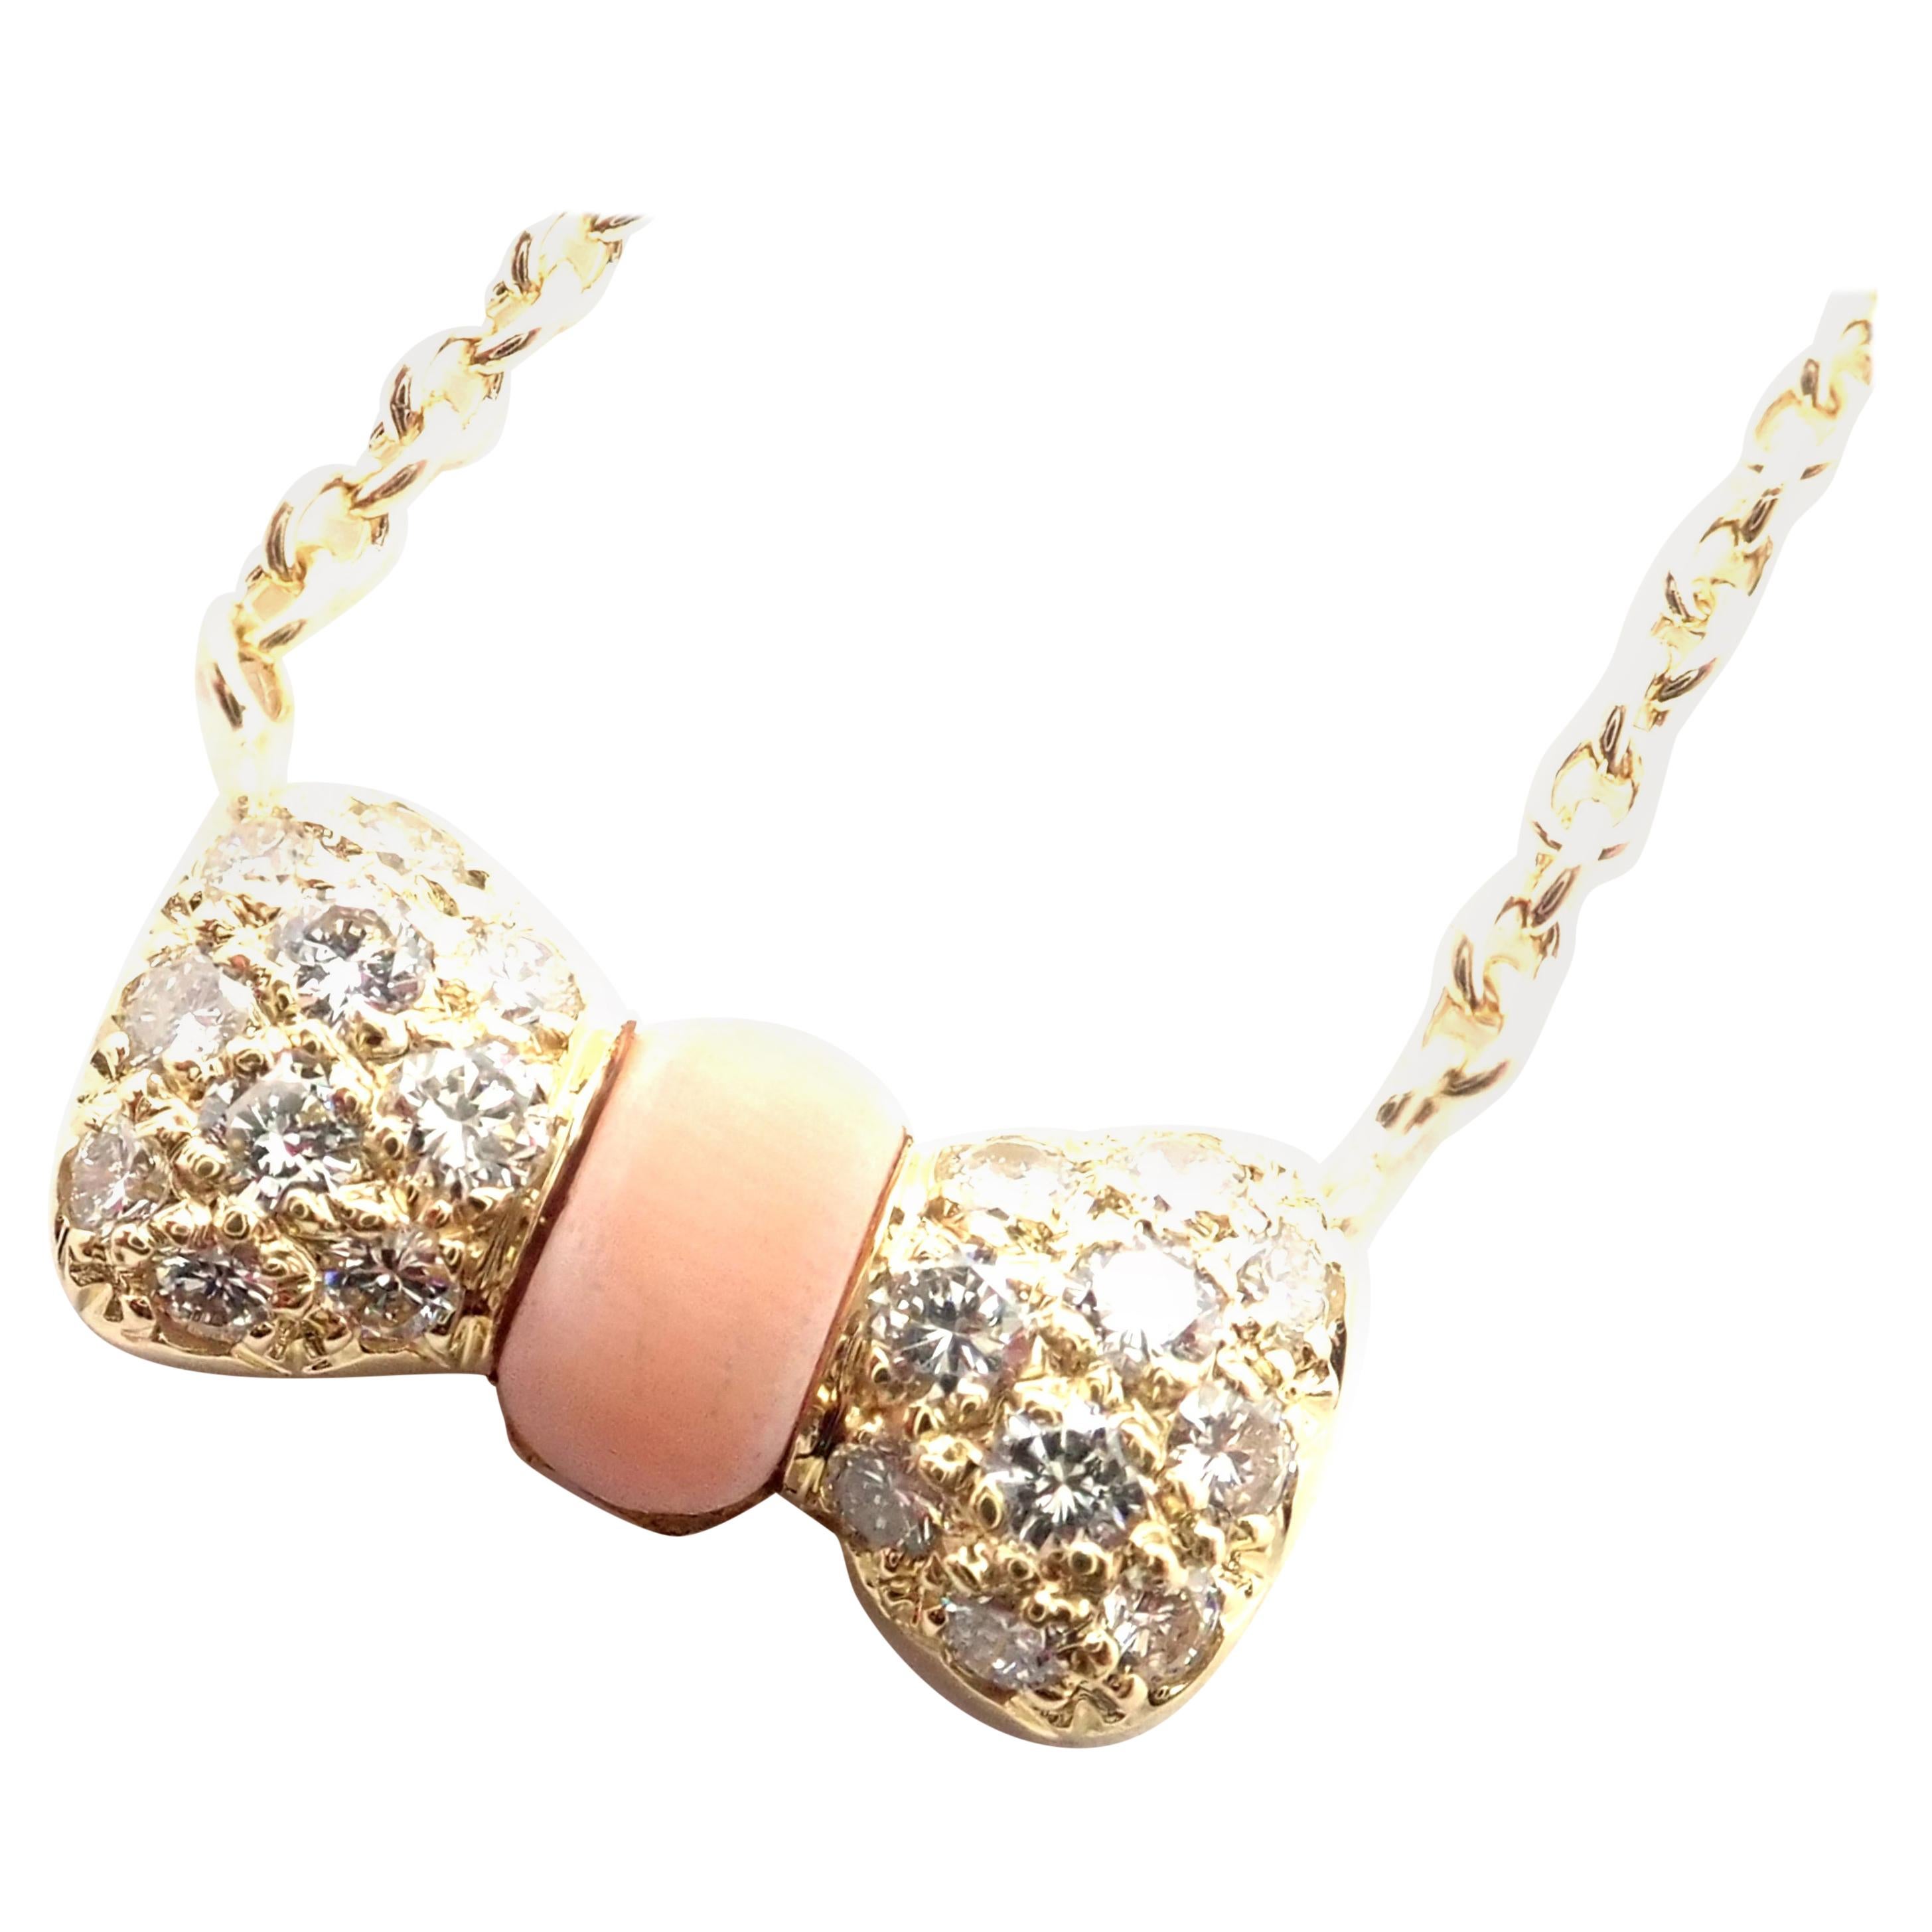 Van Cleef & Arpels, collier avec nœud en or jaune, corail et diamants